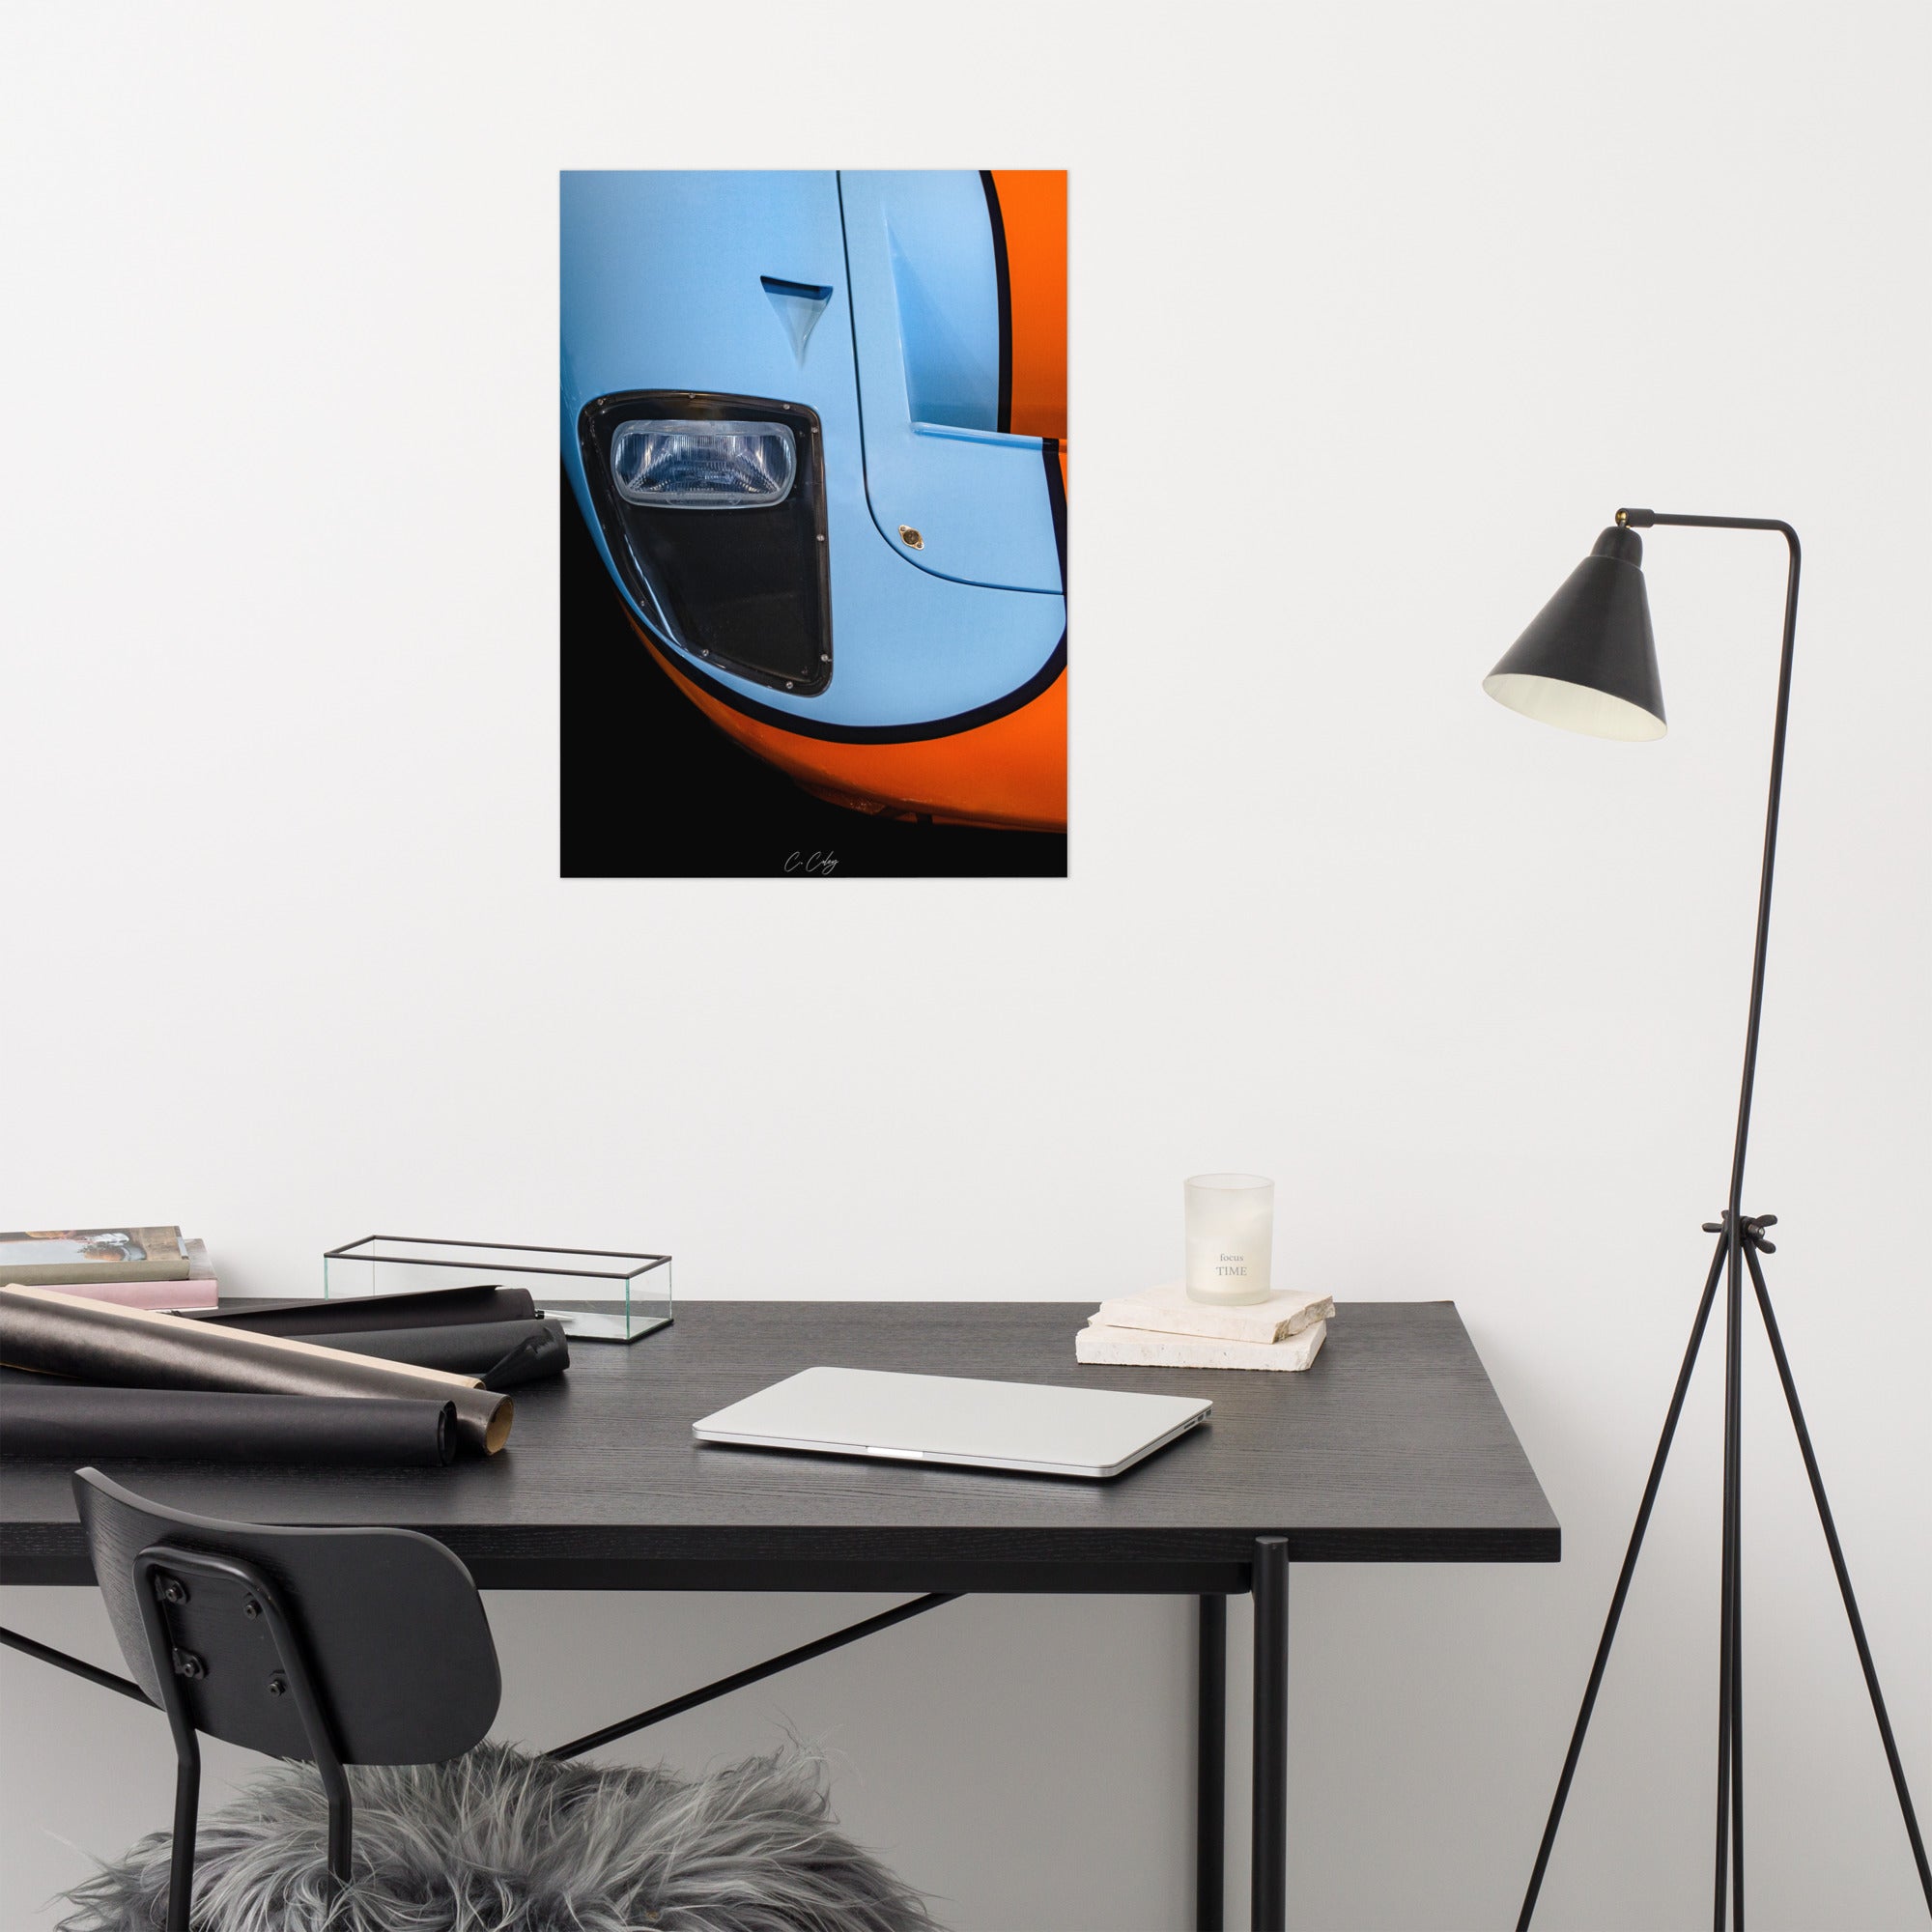 Poster 'GT40 Gulf' capturant la nostalgie de la Ford GT40 à travers un détail du bloc optique vintage et du capot bleu et orange, offrant une plongée visuelle dans l'histoire légendaire des courses automobiles par le photographe Charles Coley.